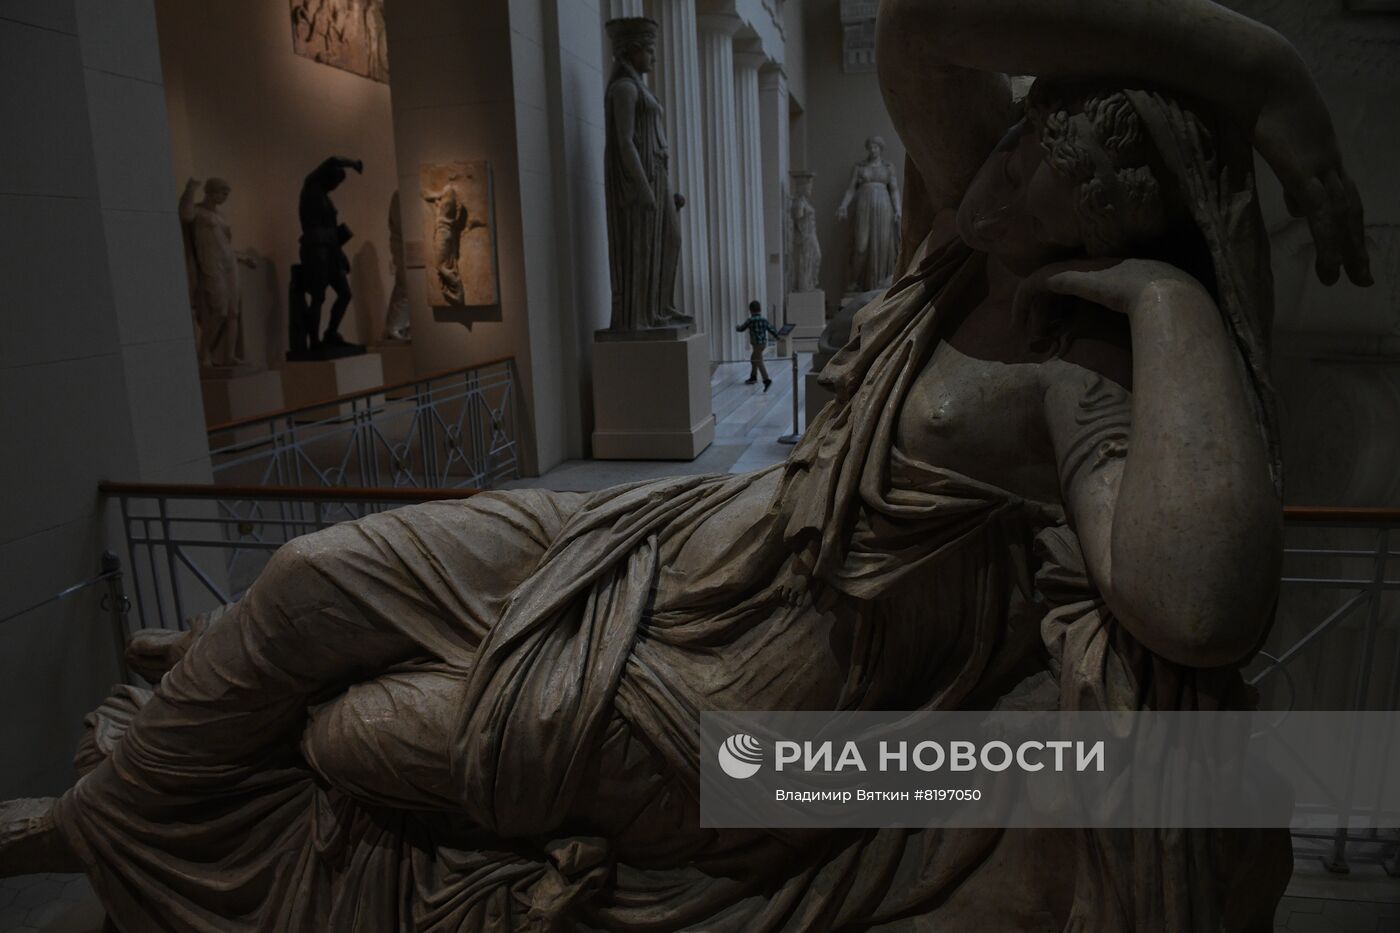 Ежегодная акция "Ночь в музее" в Москве